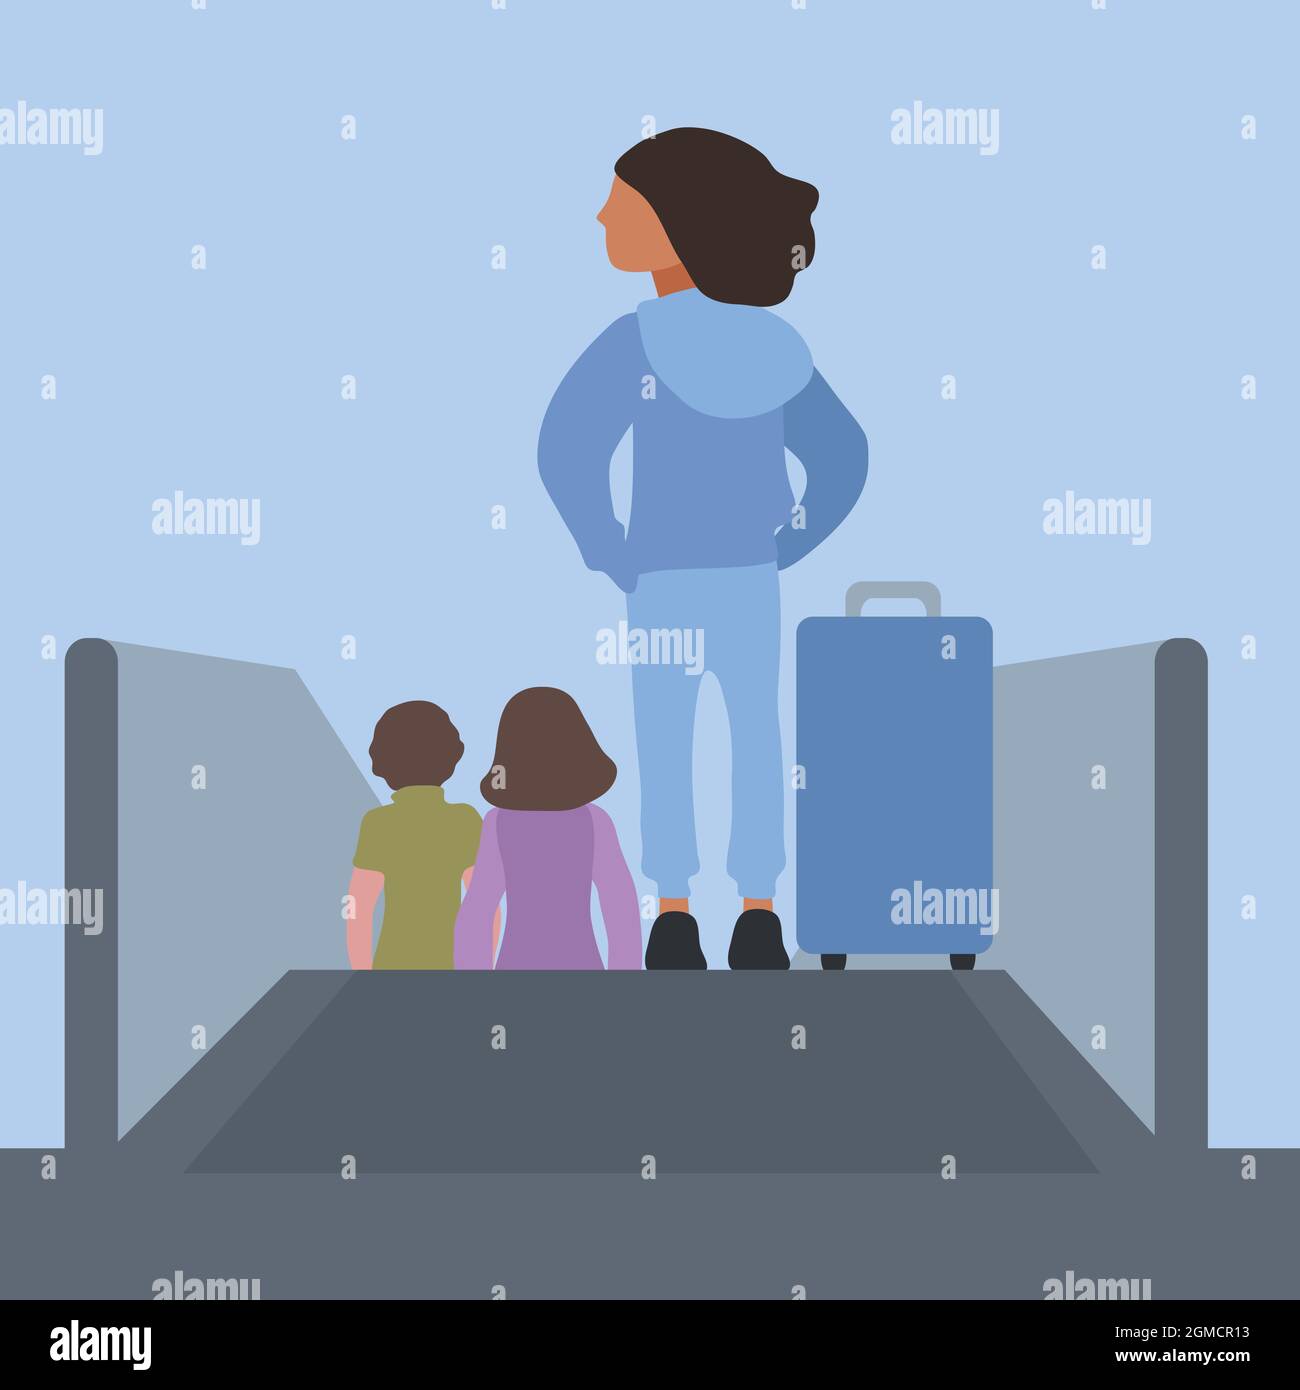 woman on escalator illustration Stock Vector